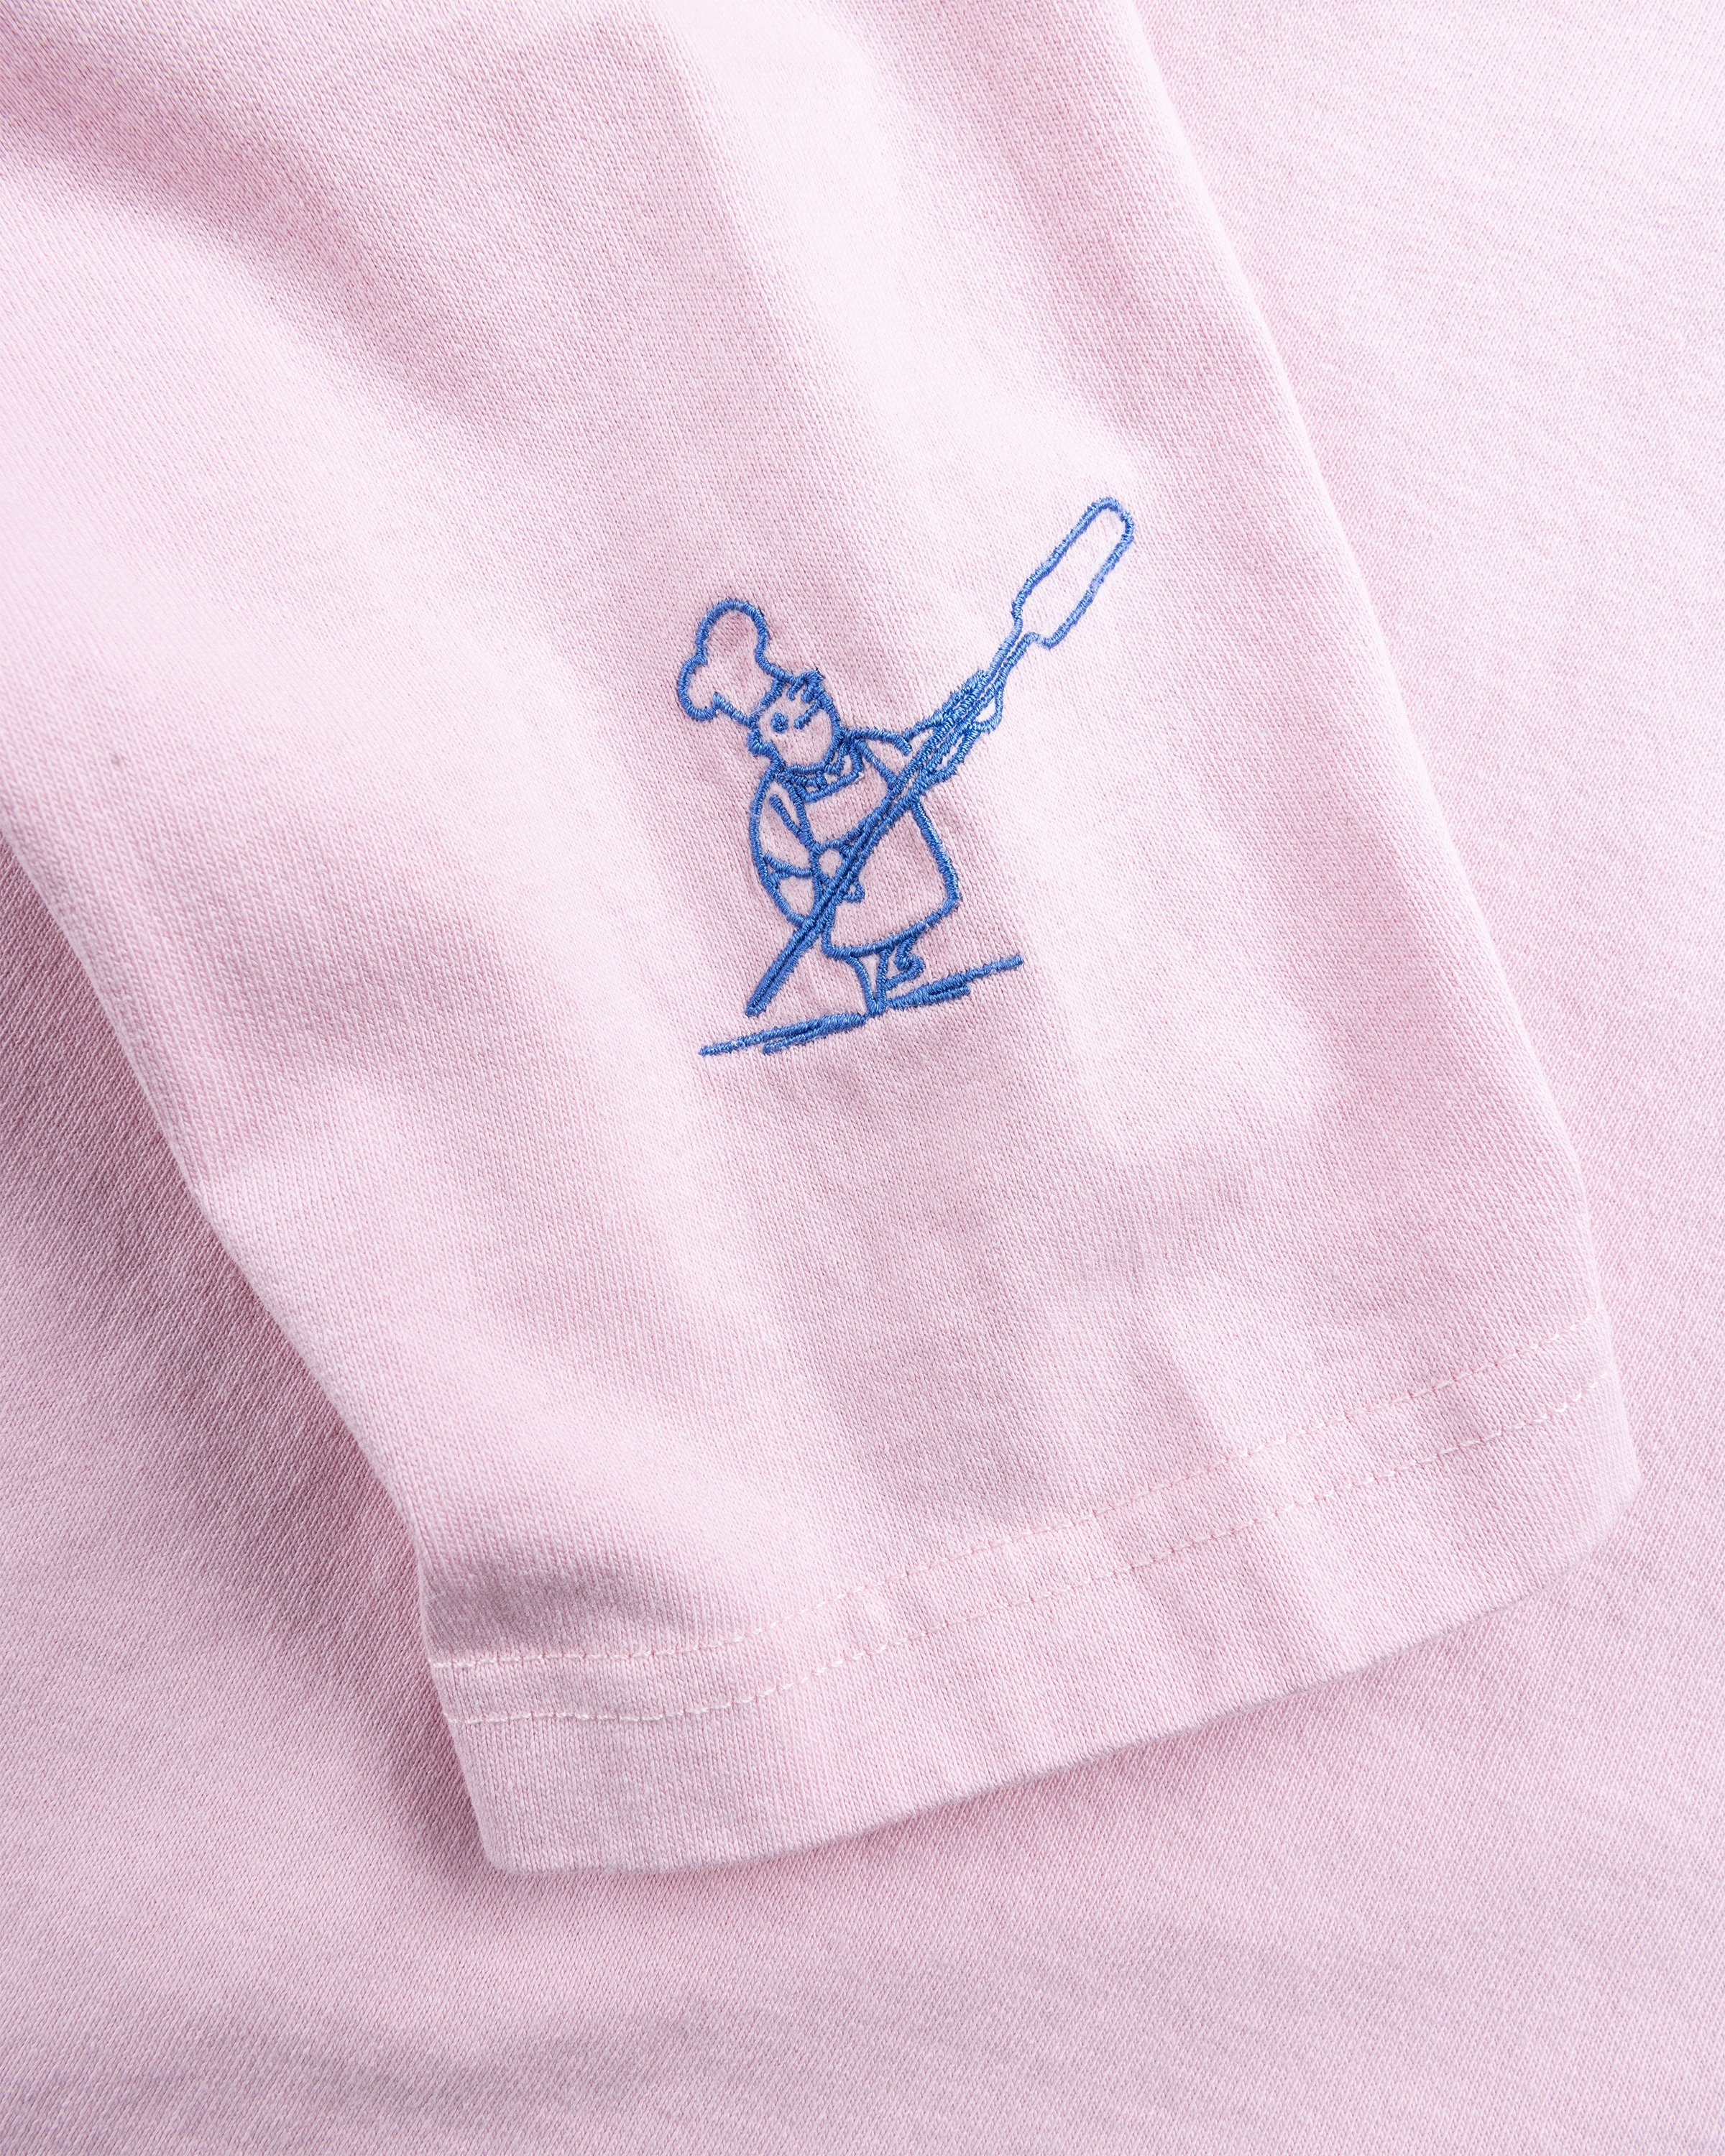 Beigel Bake x Highsnobiety - Pink Long Sleeves Tee - Clothing -  - Image 8